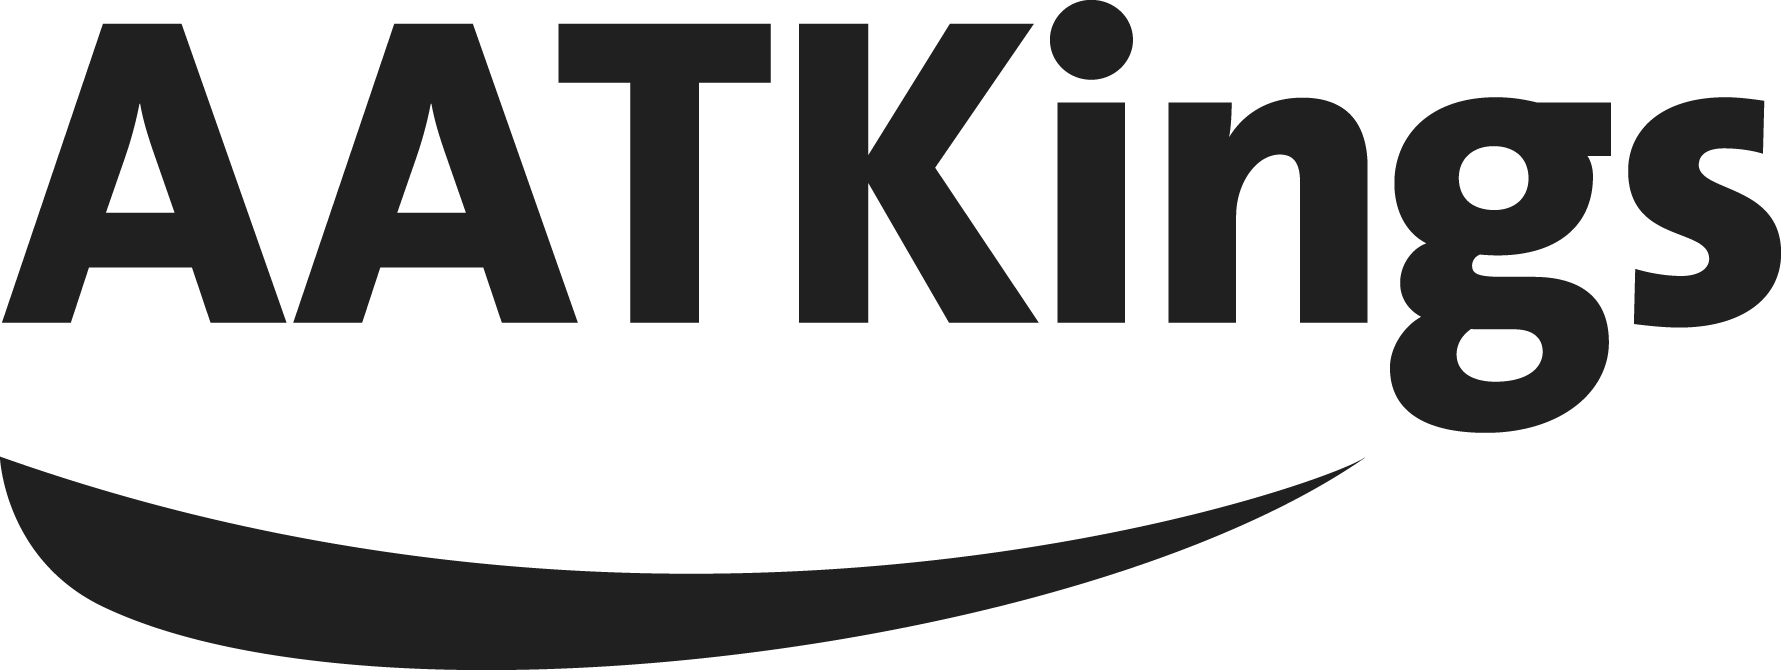 AAT Kings Logo